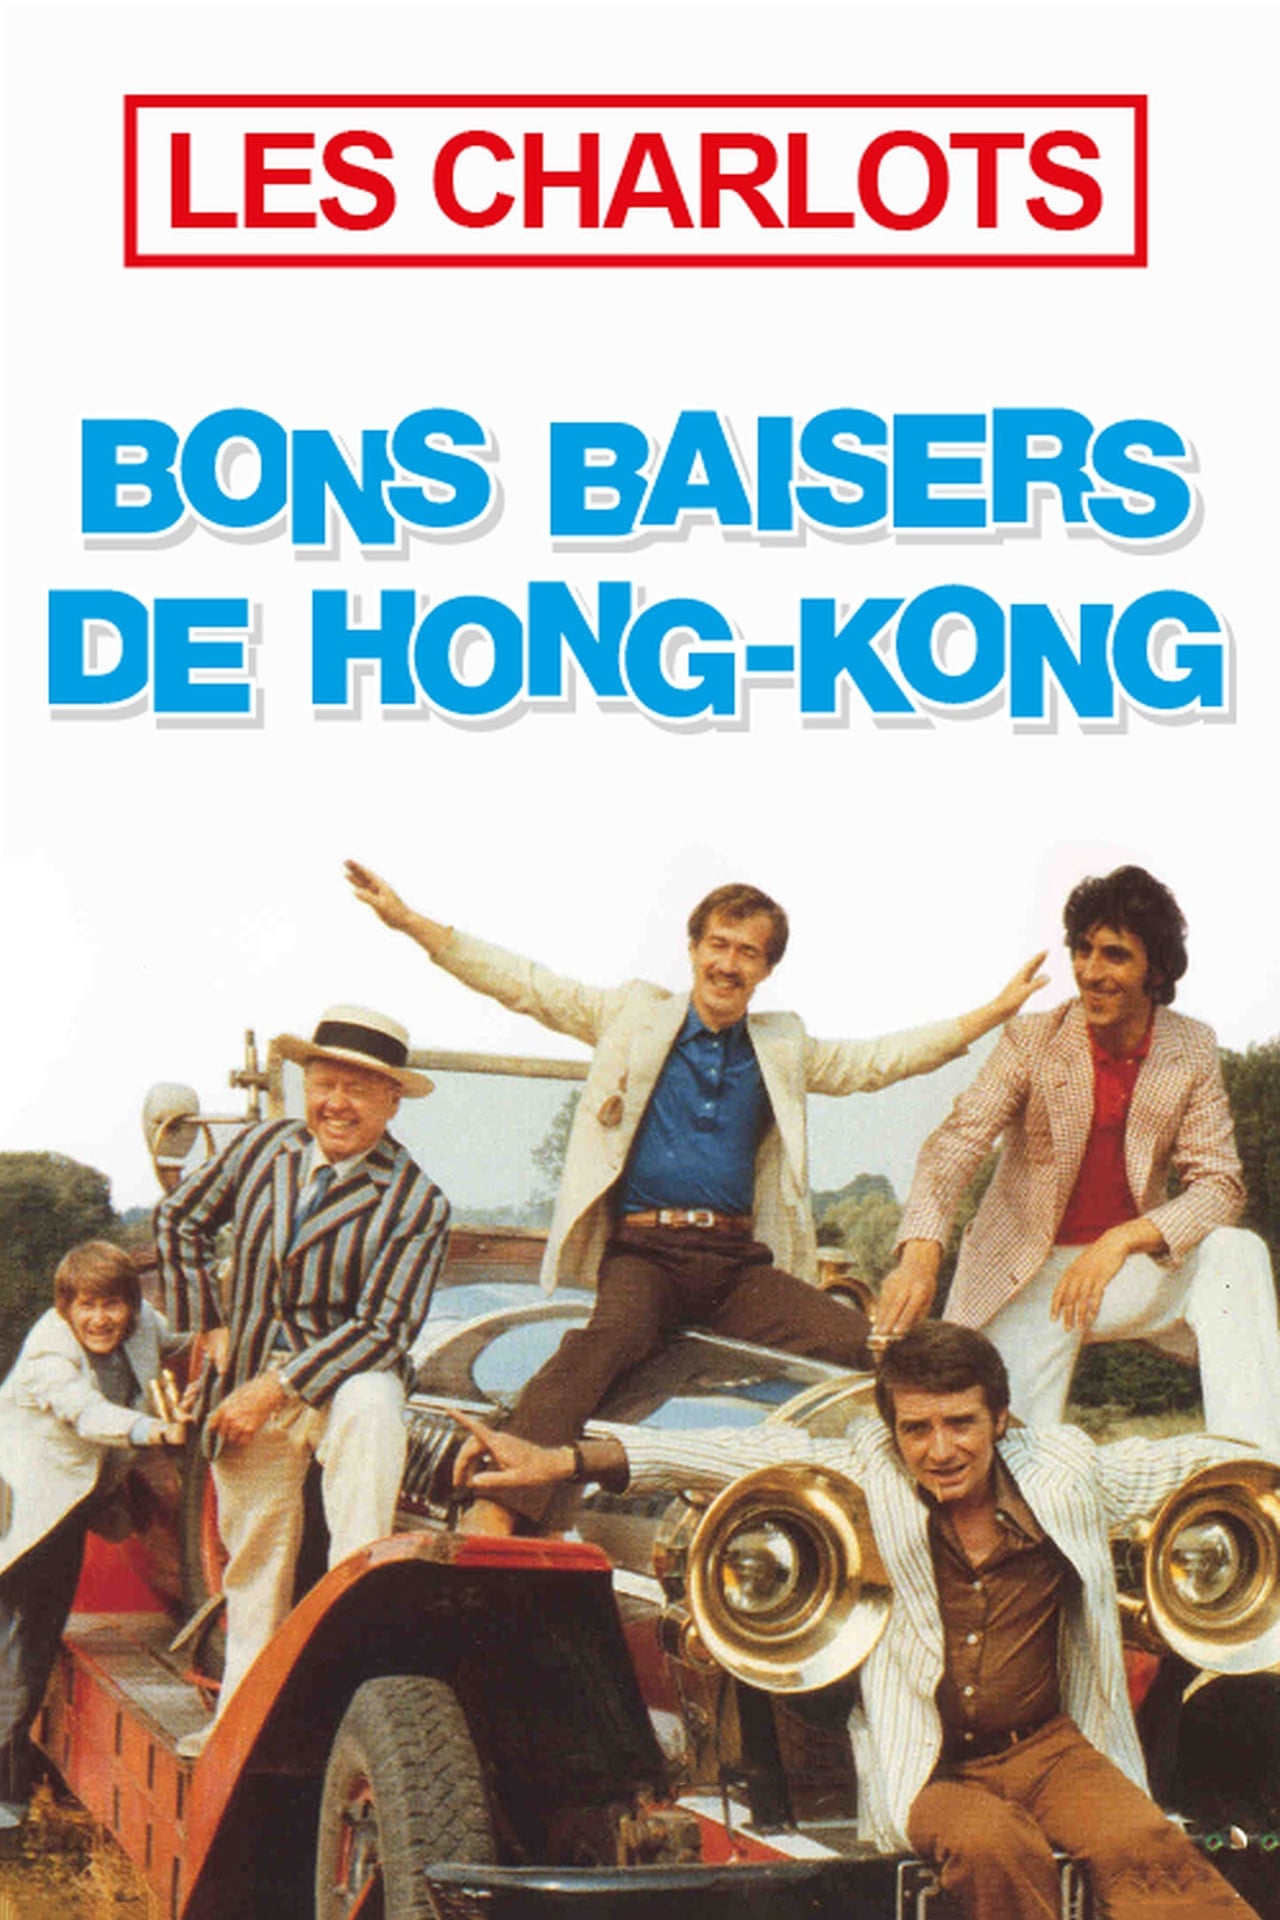 دانلود صوت دوبله فیلم Bons baisers de Hong-Kong